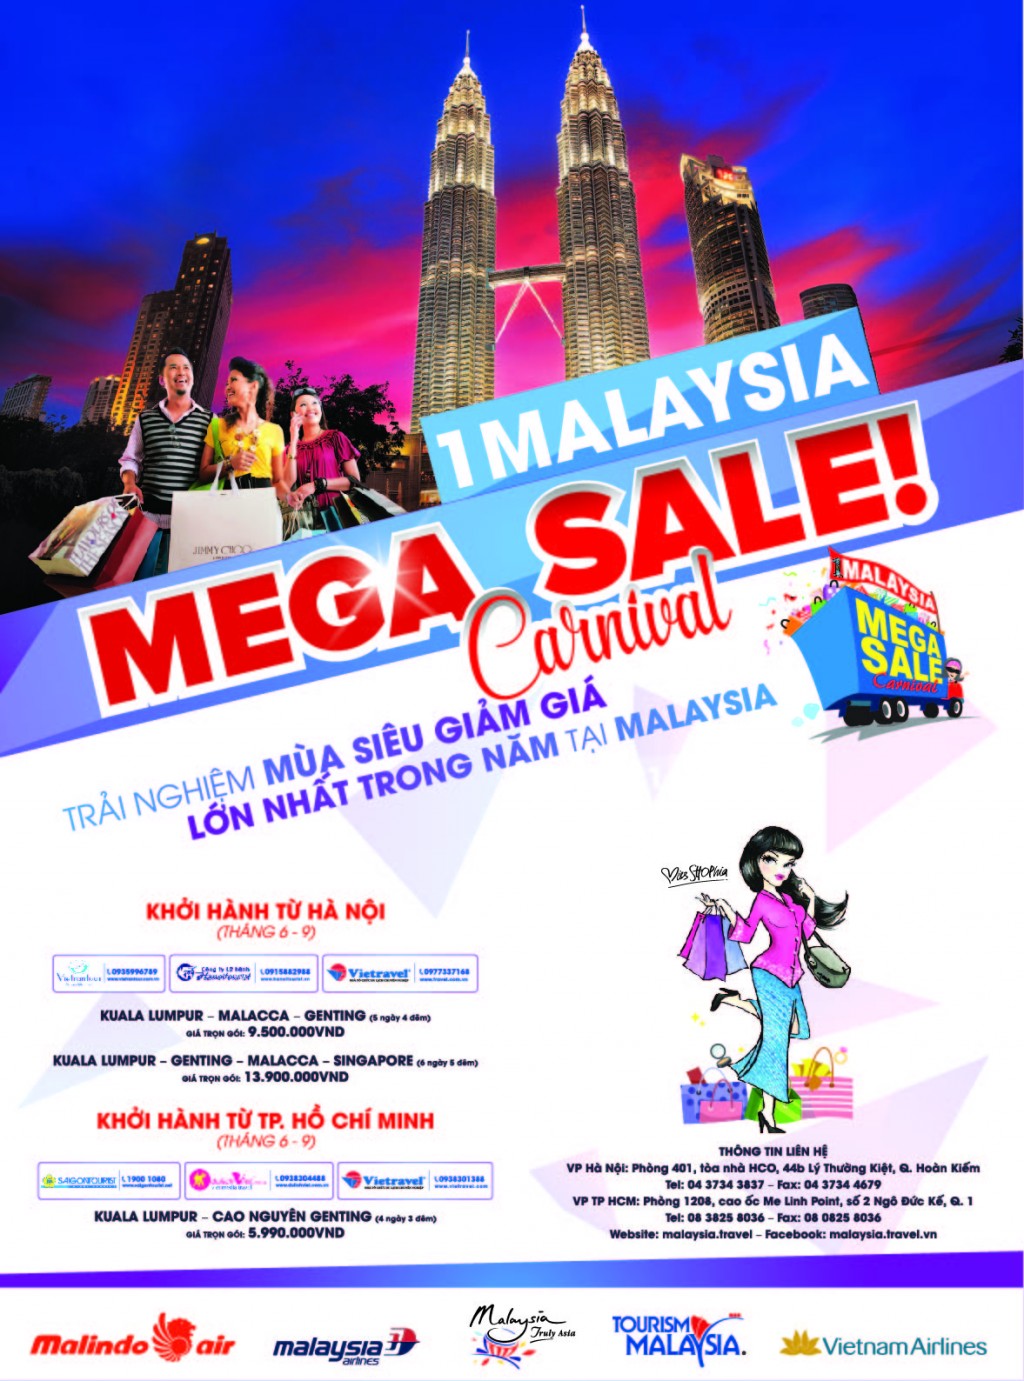 1Malaysia Mega Sale là một trong 3 chiến dịch mua sắm quốc gia hàng năm nhằm quảng bá Malaysia là điểm đến mua sắm lý tưởng cho du khách trong nước và quốc tế. 